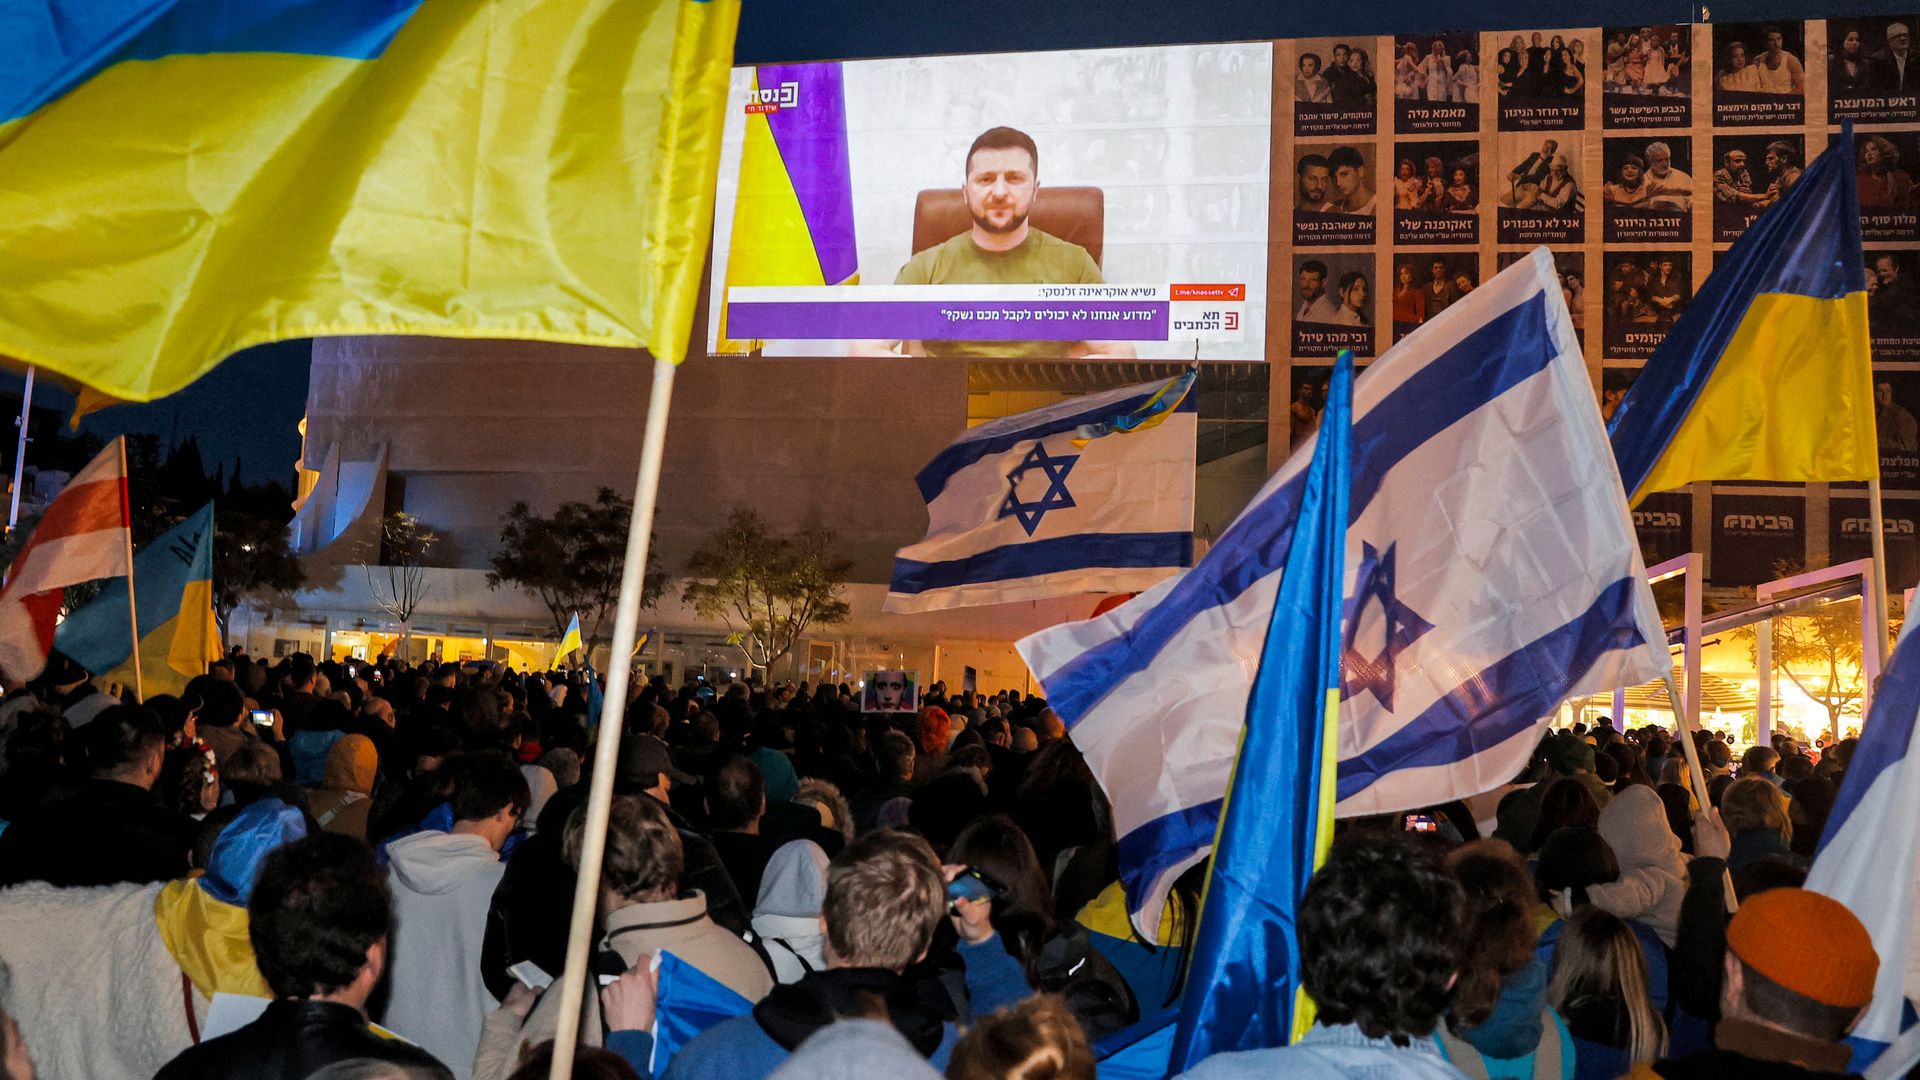 People follow the speech by Ukrainian President Volodymyr Zelensky being broadcast outside Habima Theater in Tel-Aviv